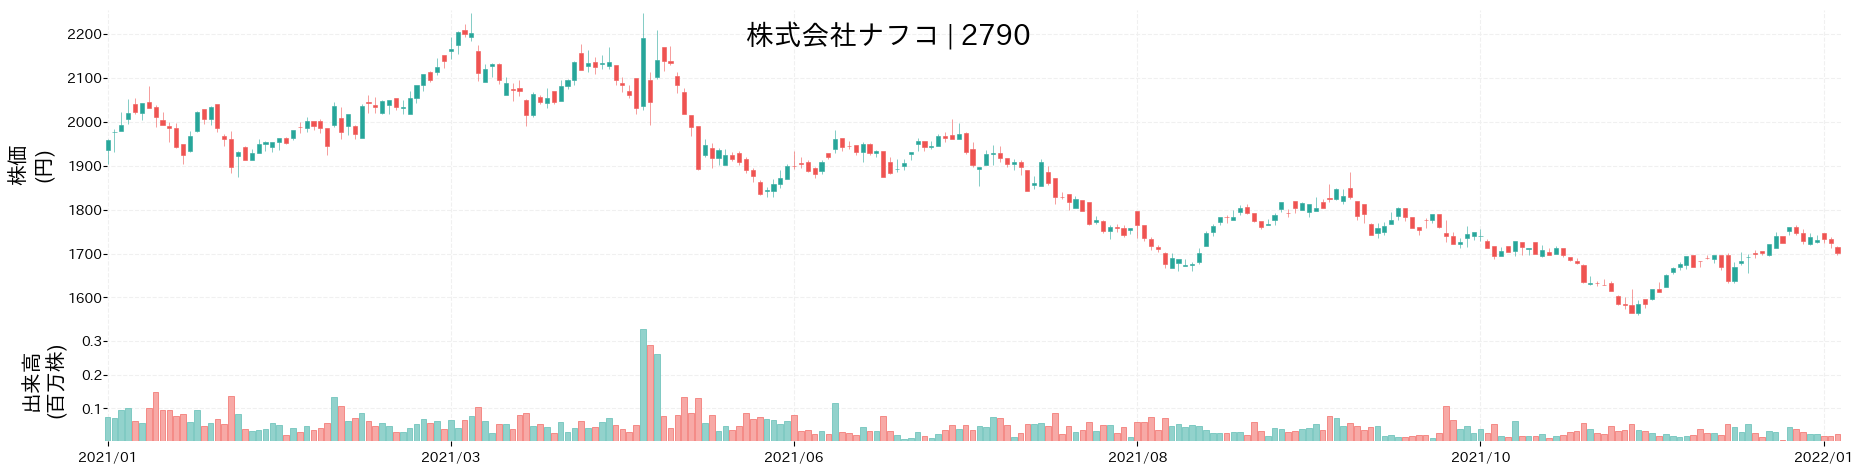 ナフコの株価推移(2021)